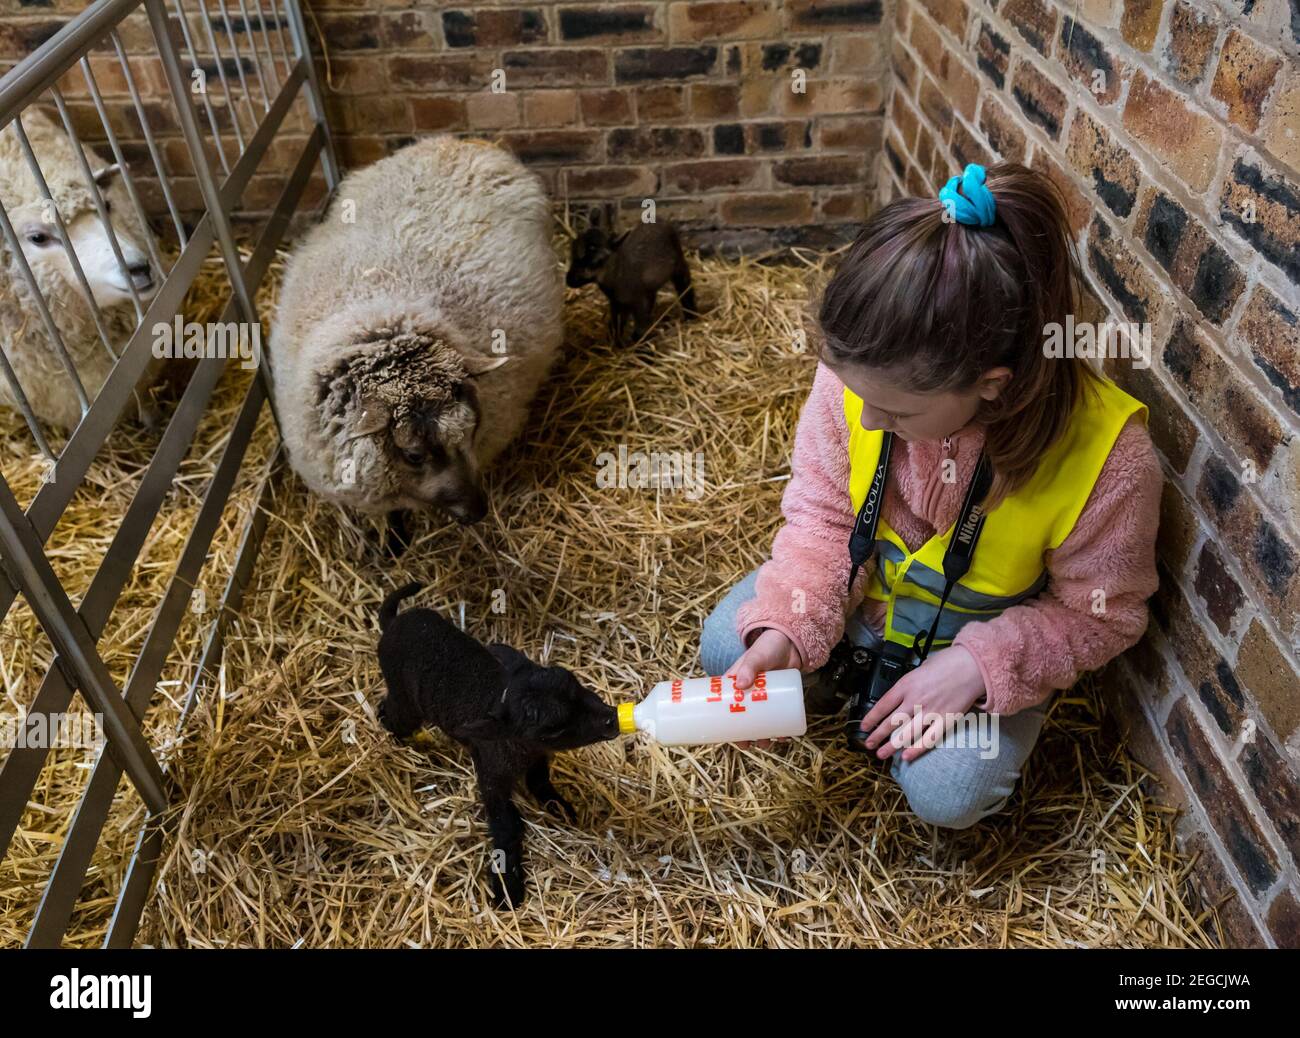 East Lothian, Schottland, Großbritannien, 18th. Februar 2021. Fütterung neugeborener Lämmer: Zoe Shepherd, ein Grundschüler im Alter von 10 Jahren, hilft Flasche Fütterung eines Shetland Schaf Lamm. Sie arbeitet an einem Heim-Schulprojekt an der Aberlady Primary School über Natur, also brachte sie ihre Kamera, um Fotos von den Lämmern zu machen Stockfoto